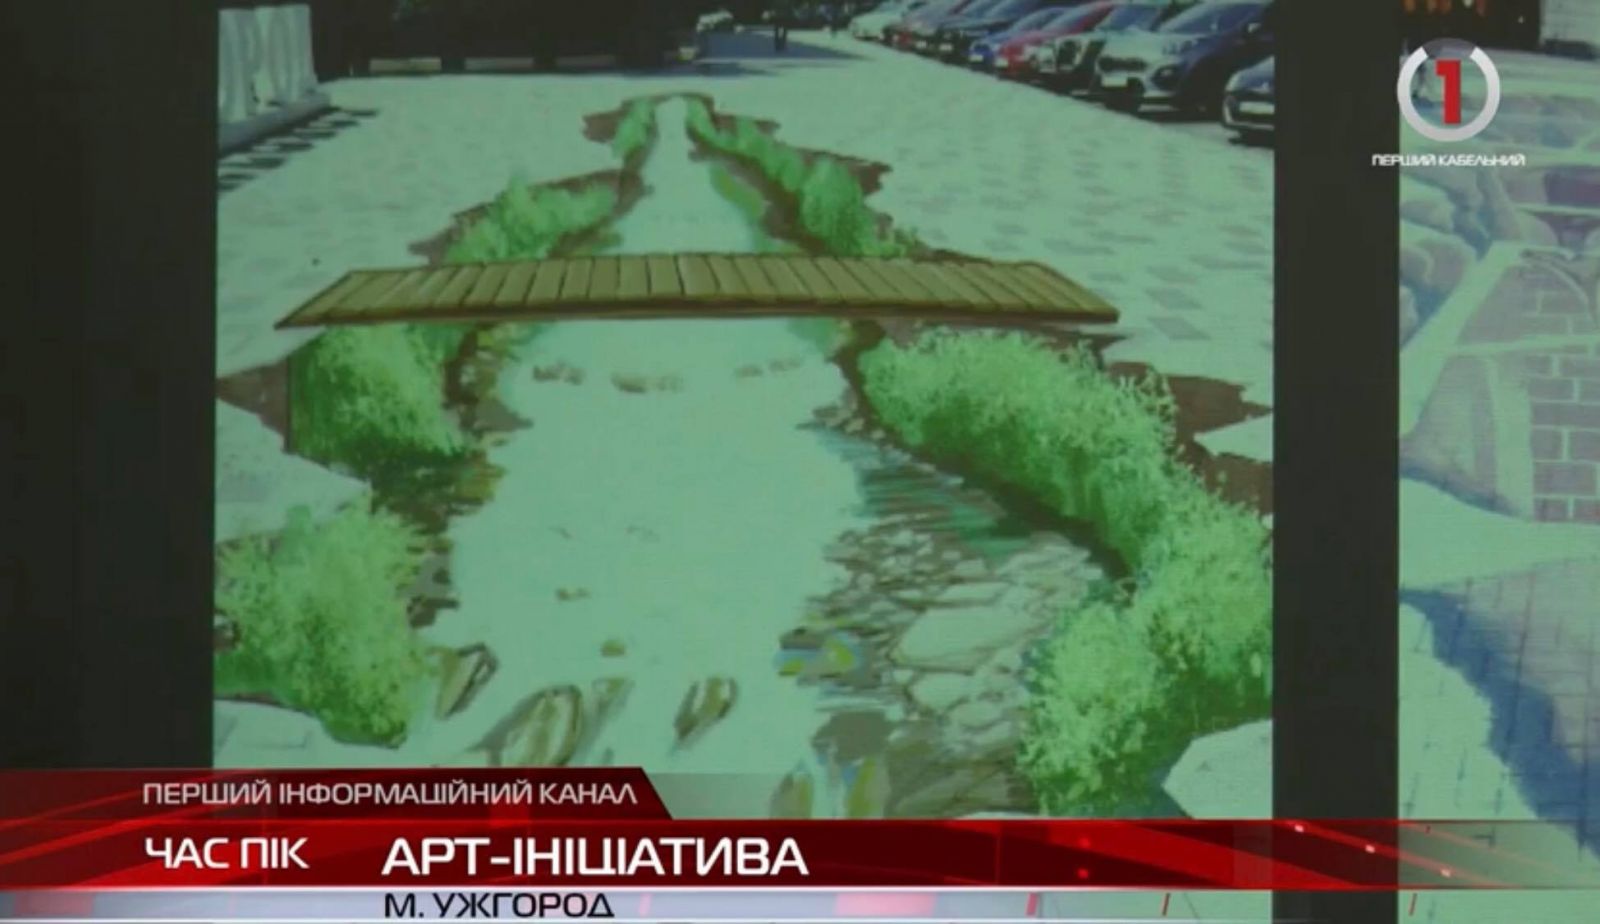 Ковток гірської річки у середмісті: в Ужгороді з’явиться ЗD-малюнок (ВІДЕО)